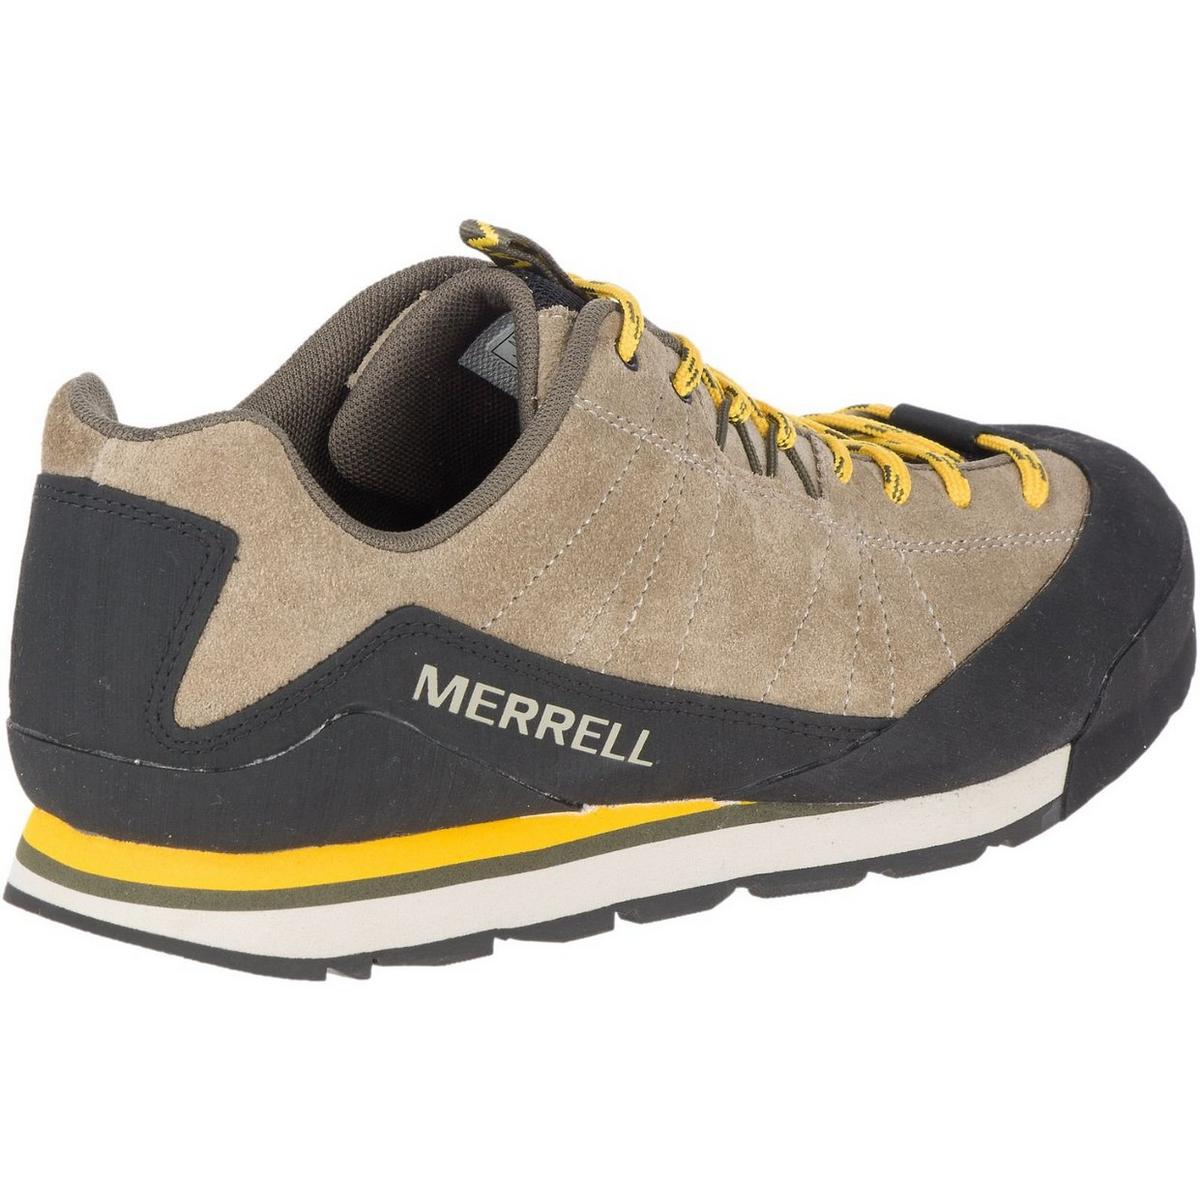 Merrell Men's Catalyst Suede - Brindle